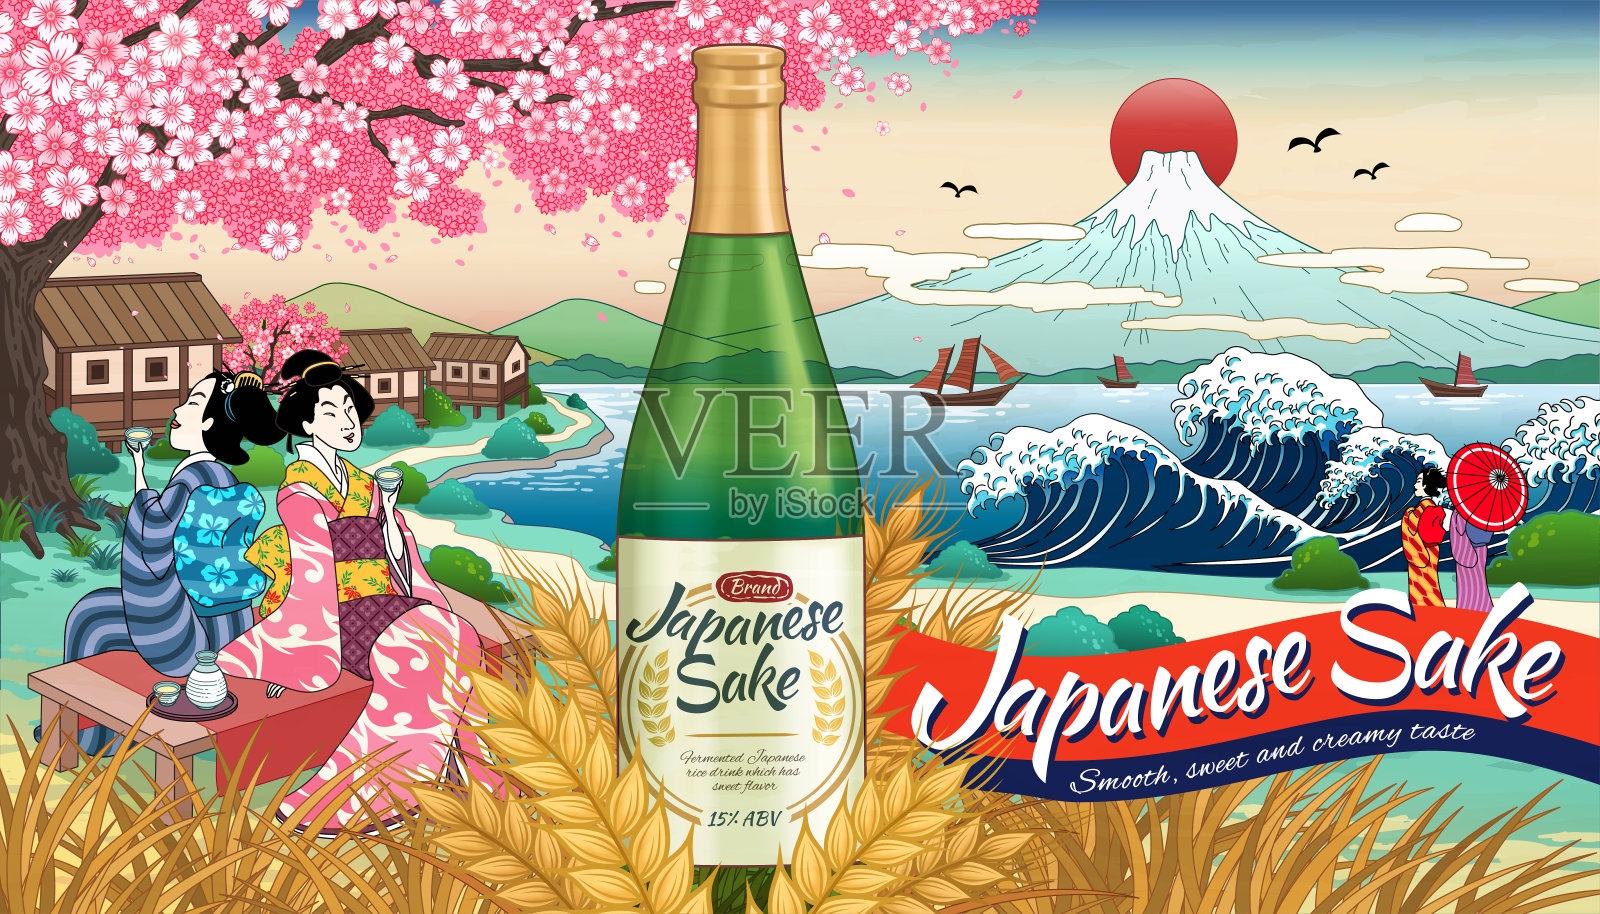 浮世绘风格的日本清酒广告插画图片素材